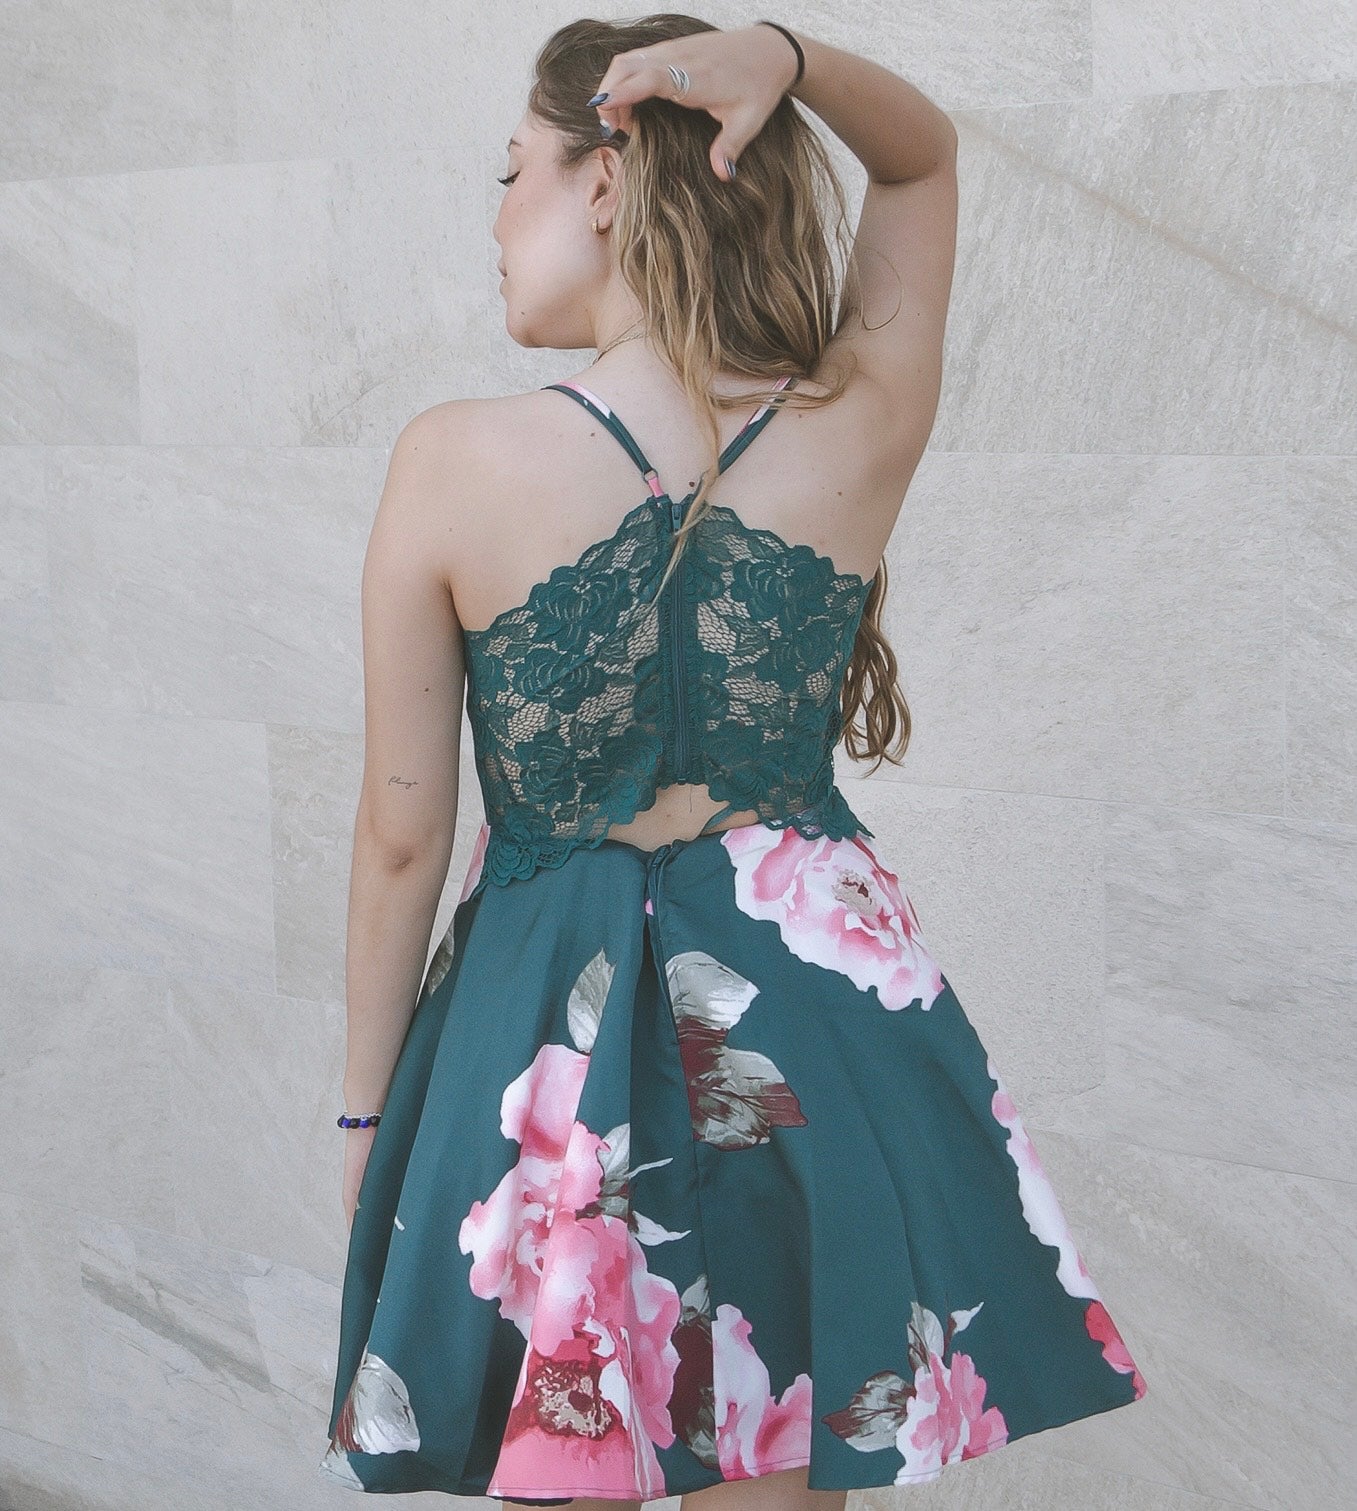 Floral mini dress